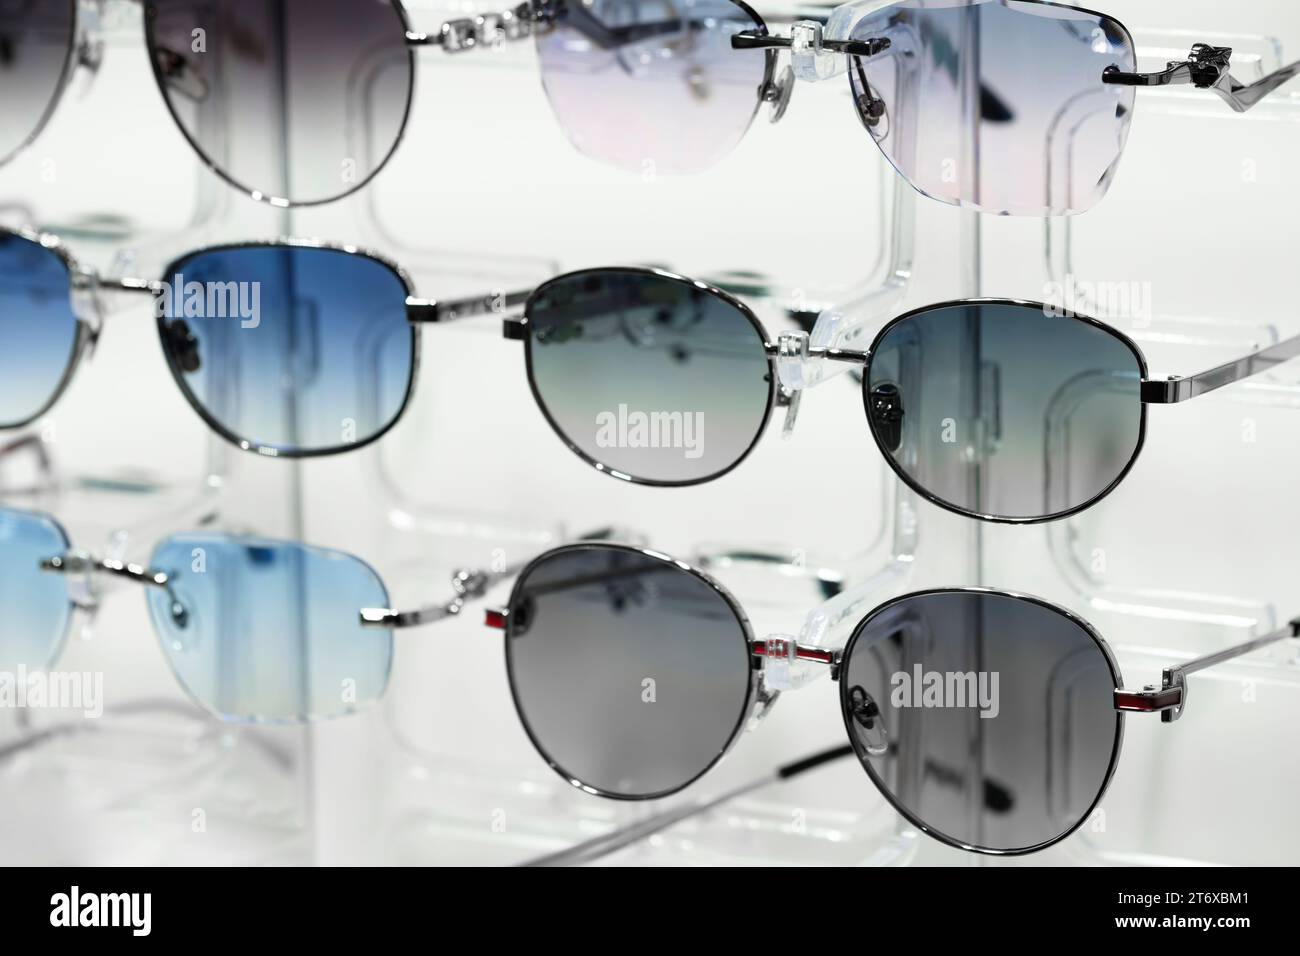 lunettes, décoration, lunettes de soleil, lunettes pour femmes, belles lunettes sur le marché Banque D'Images